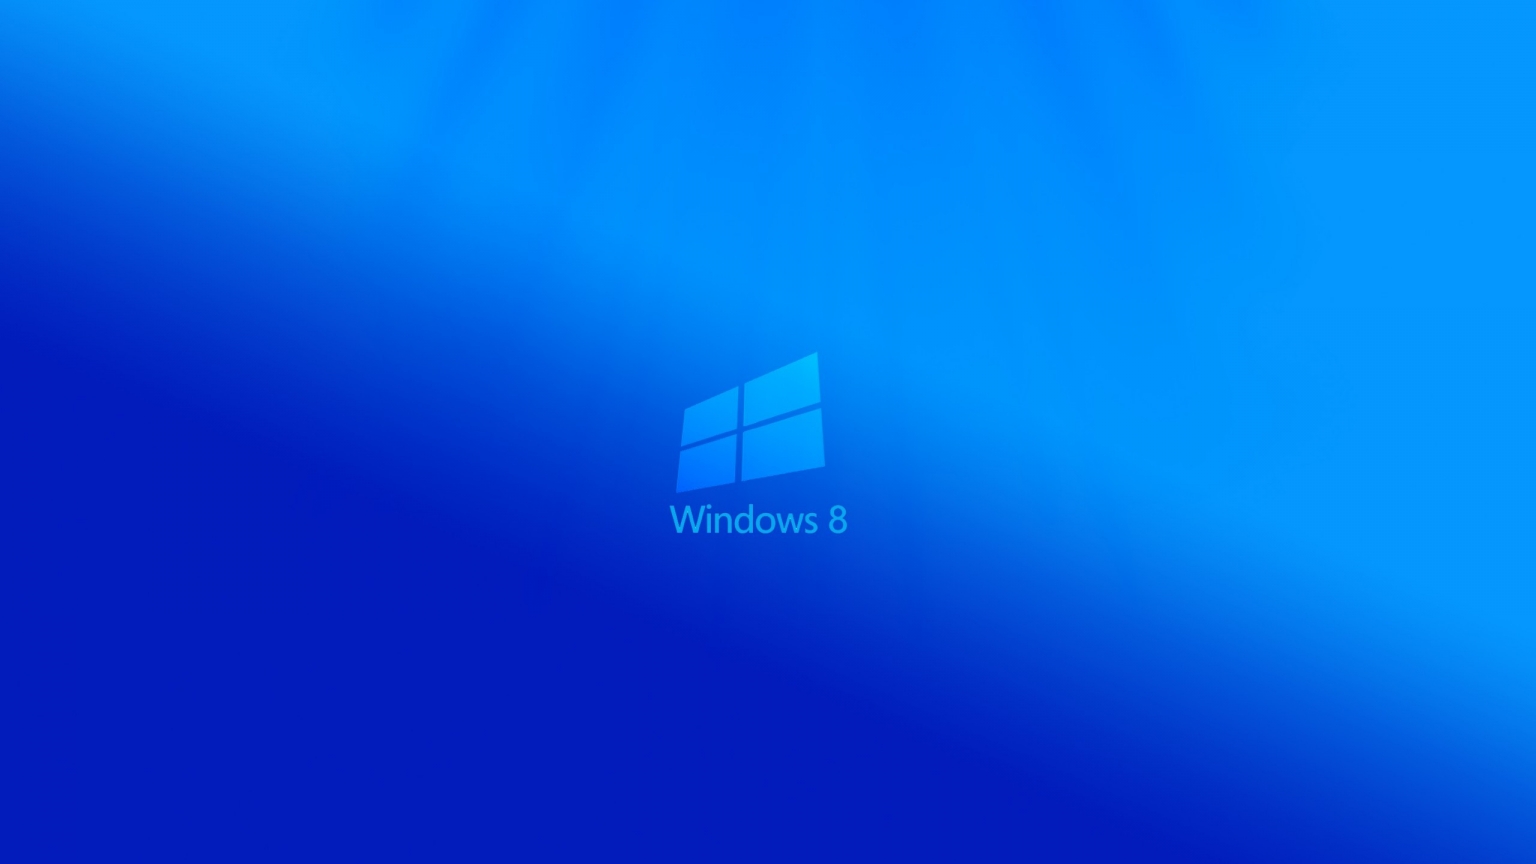 Windows 8 Light for 1536 x 864 HDTV resolution